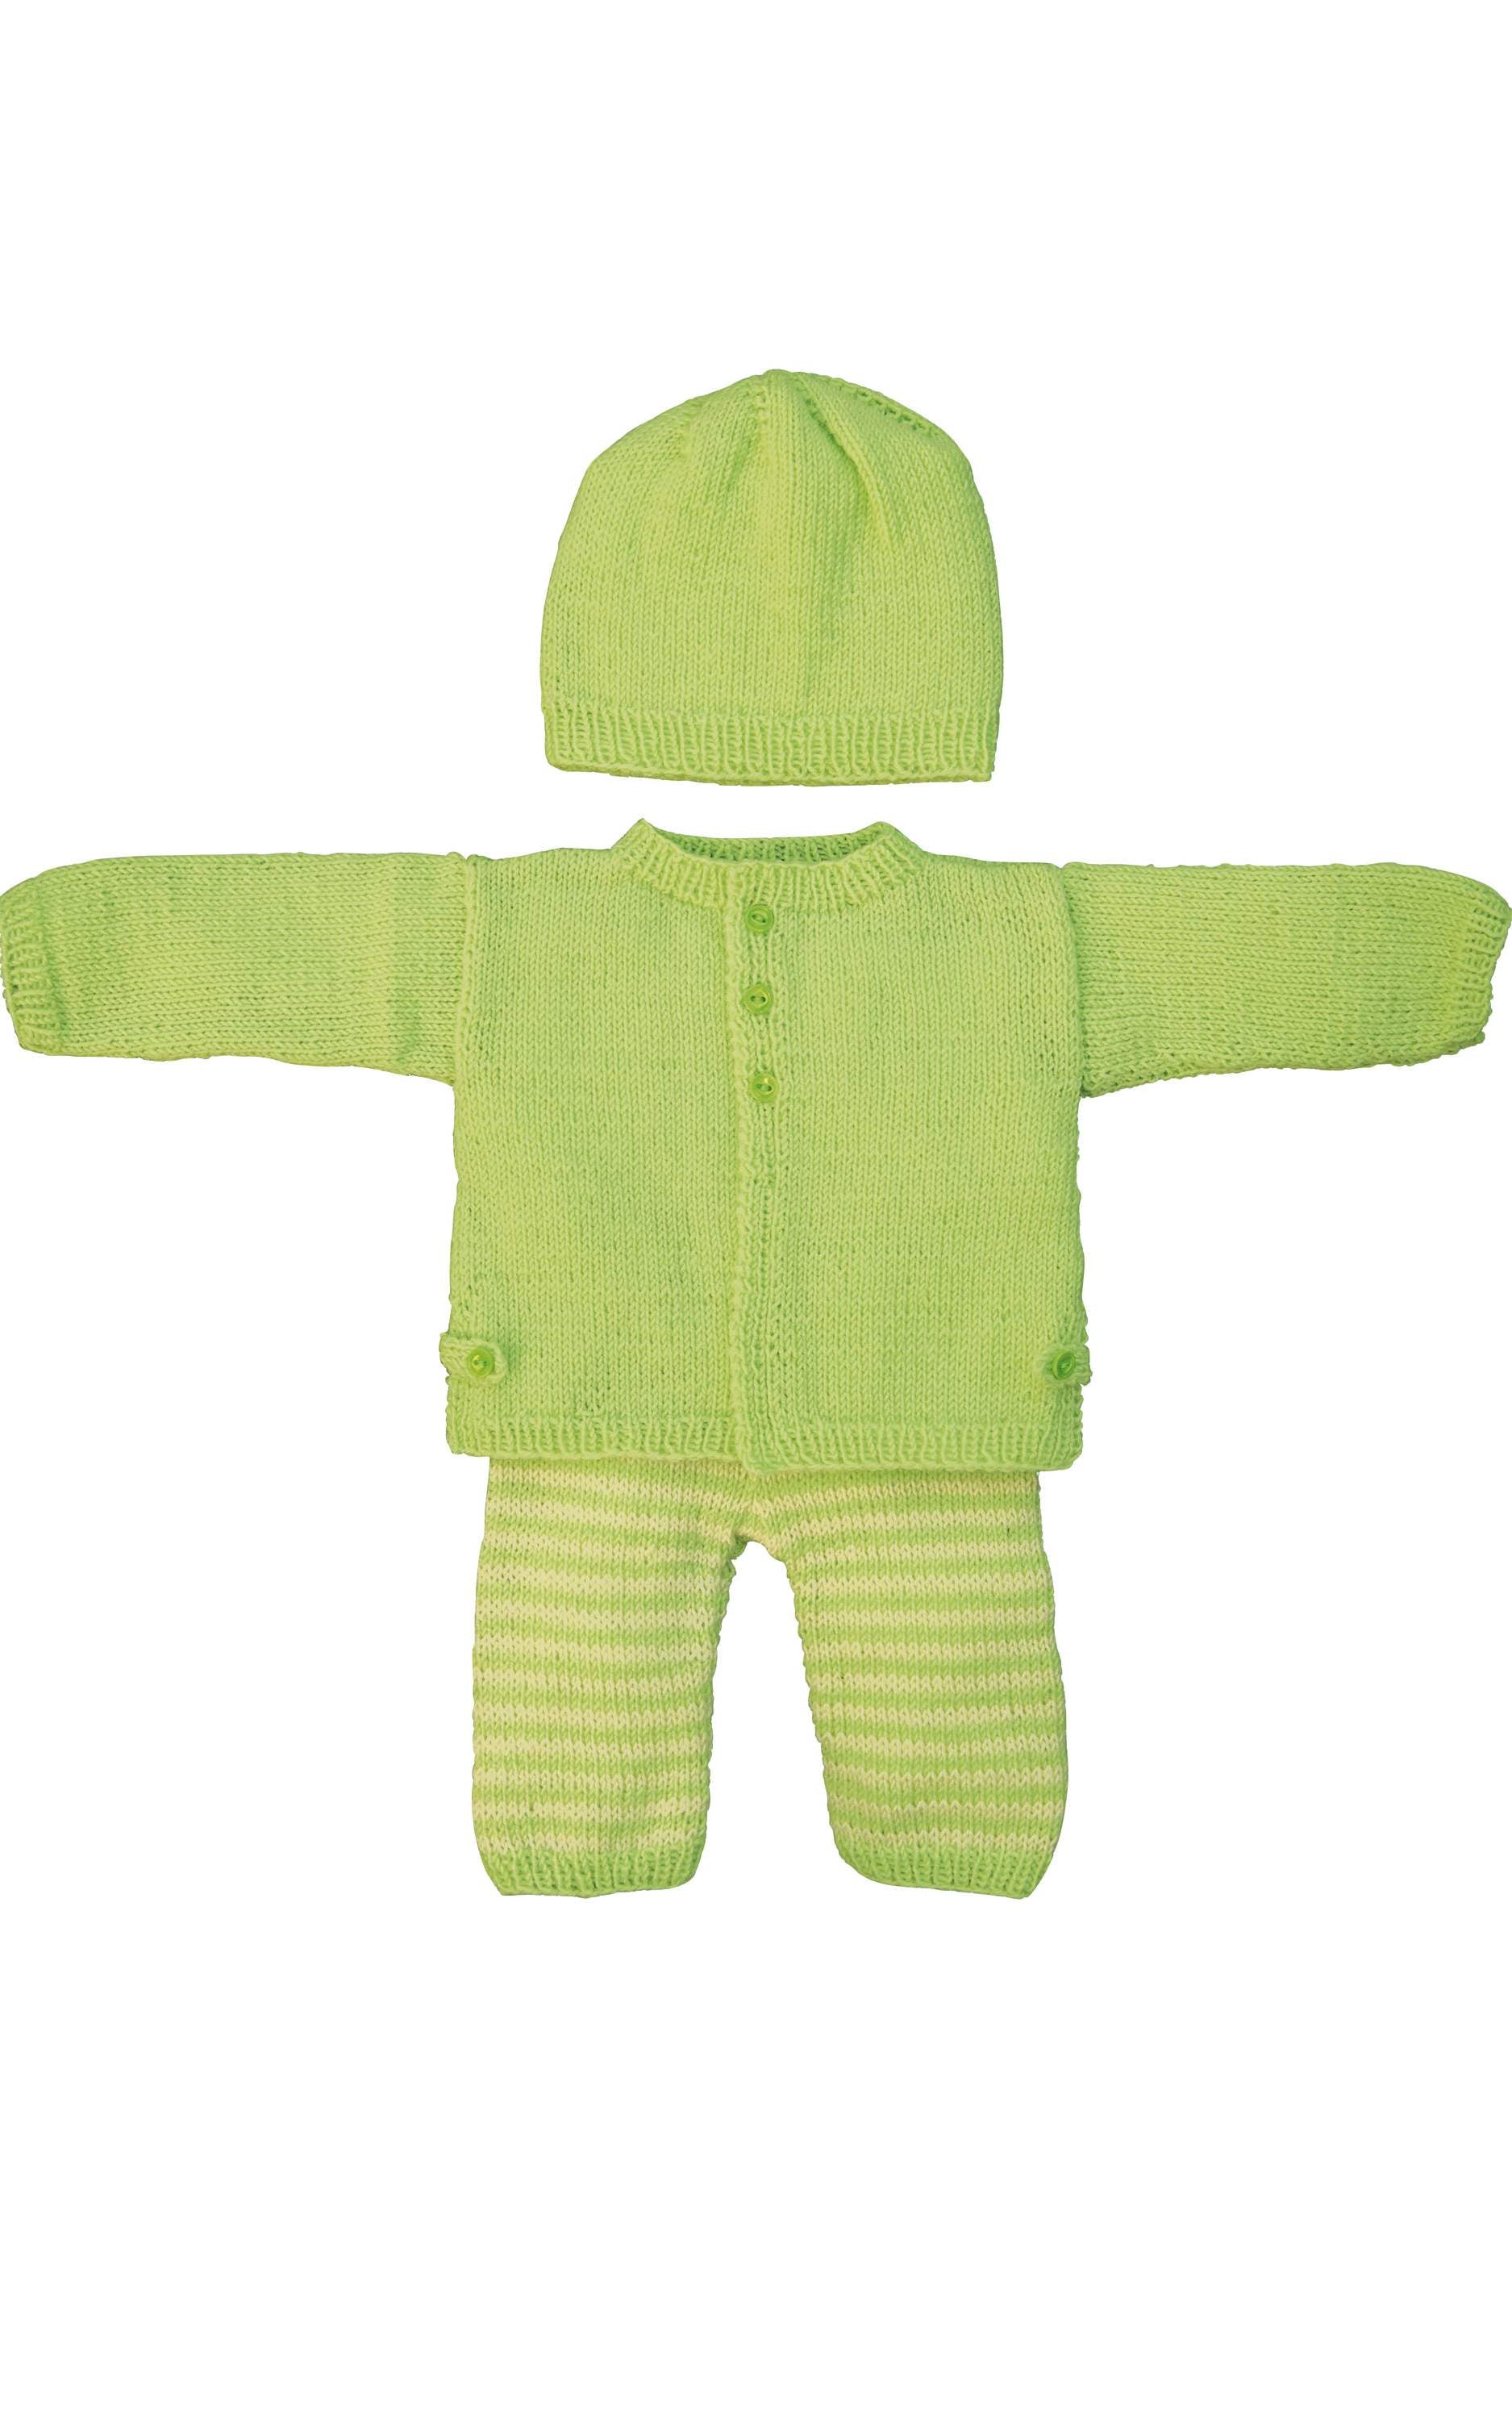 Baby Jacke mit Riegeln - Strickset von LANA GROSSA jetzt online kaufen bei OONIQUE